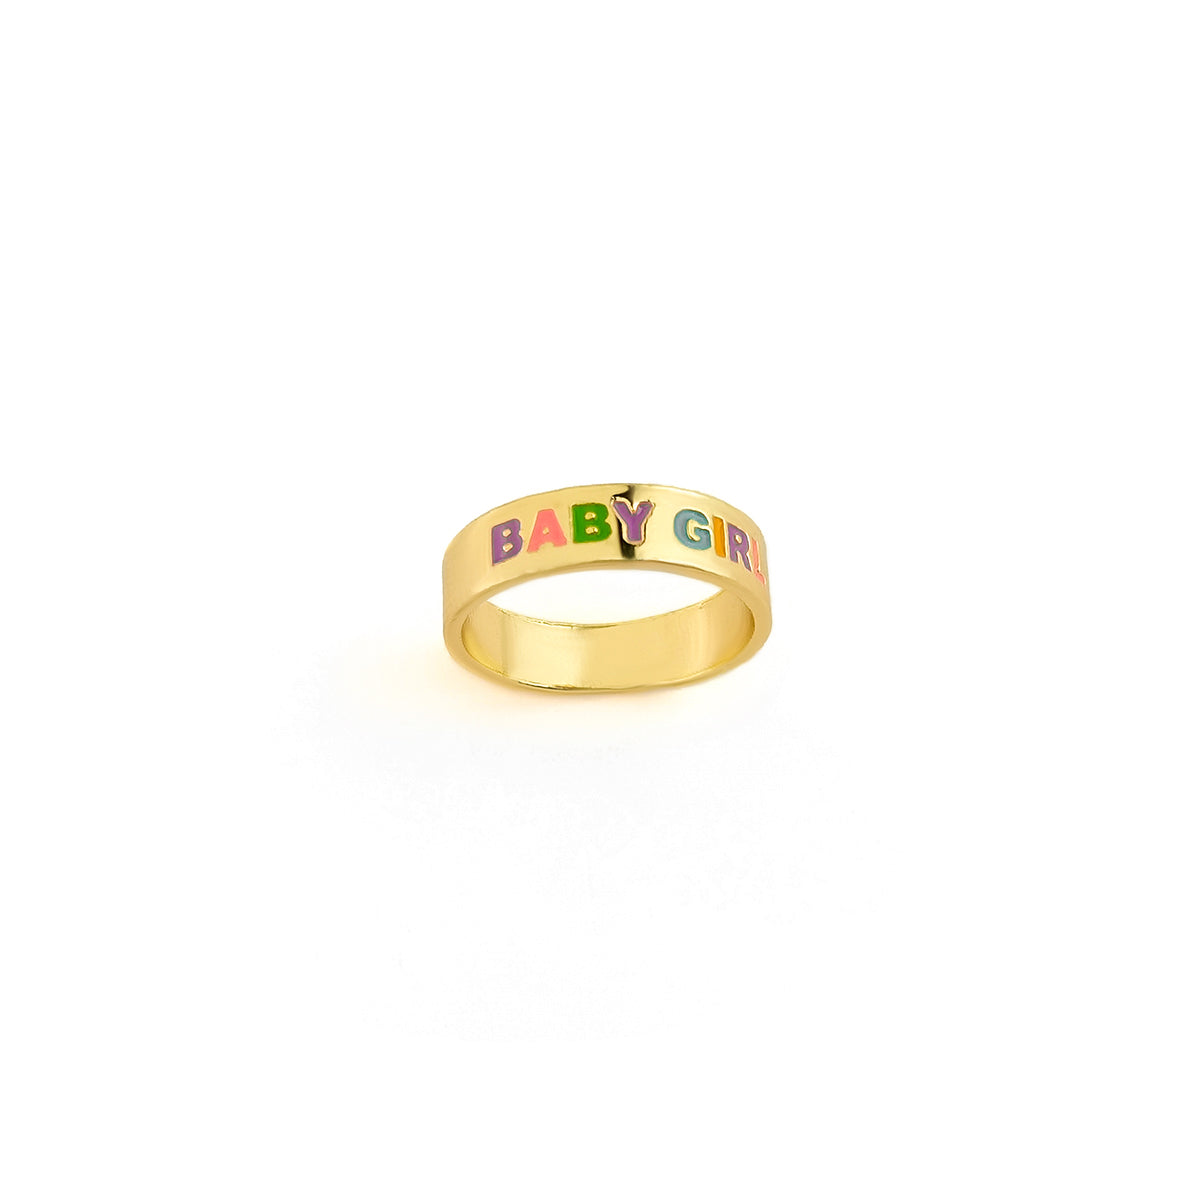 Enamel & 18K Gold-Plated 'Baby Girl' Ring